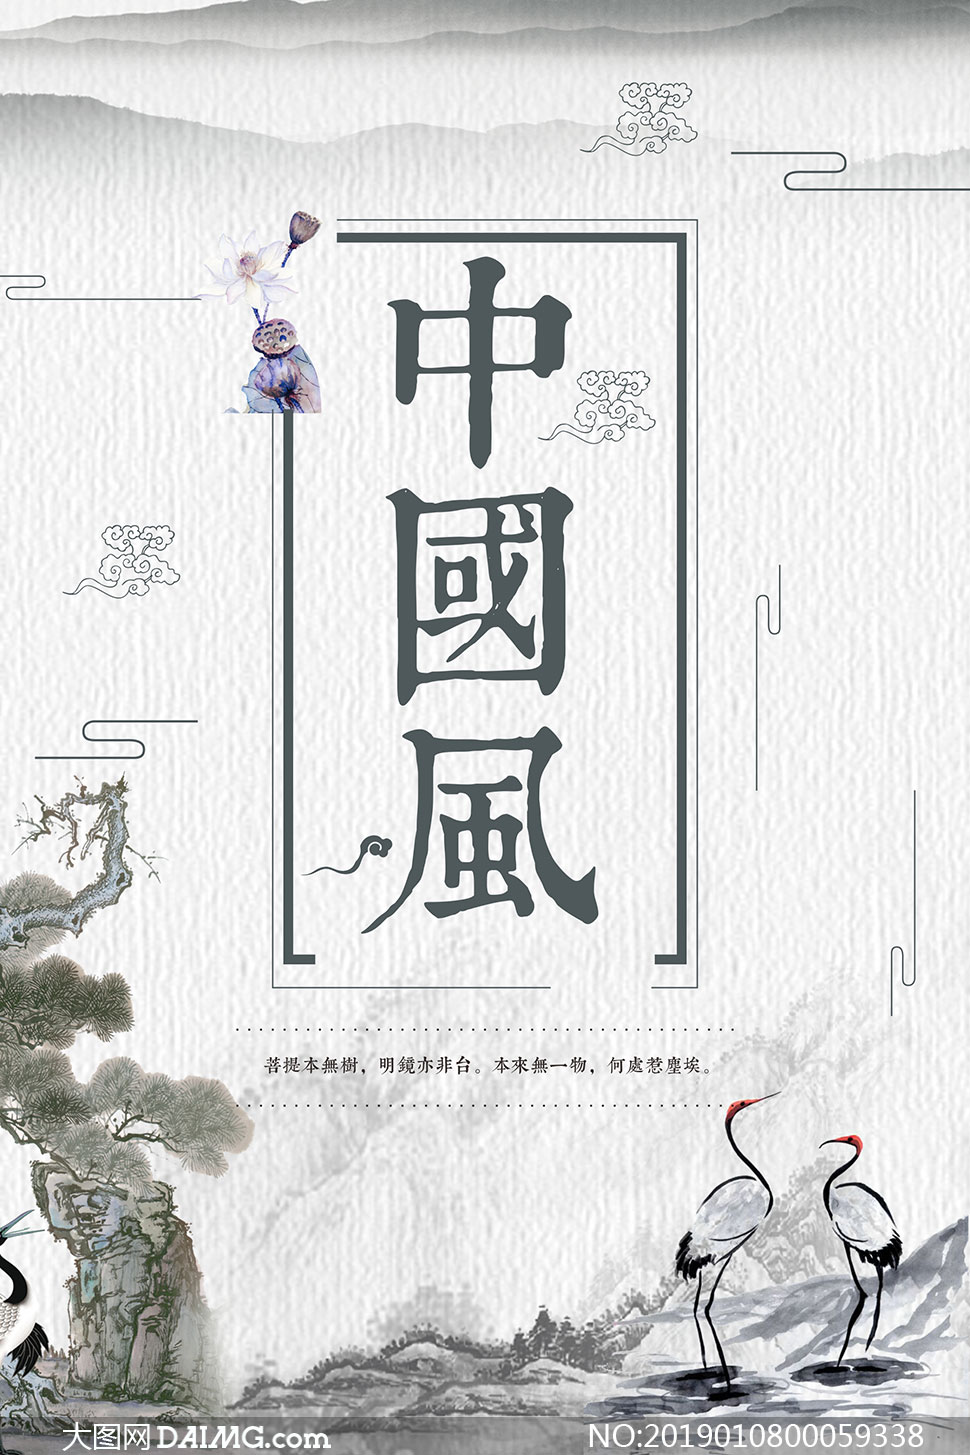 中国风主题宣传海报设计矢量素材